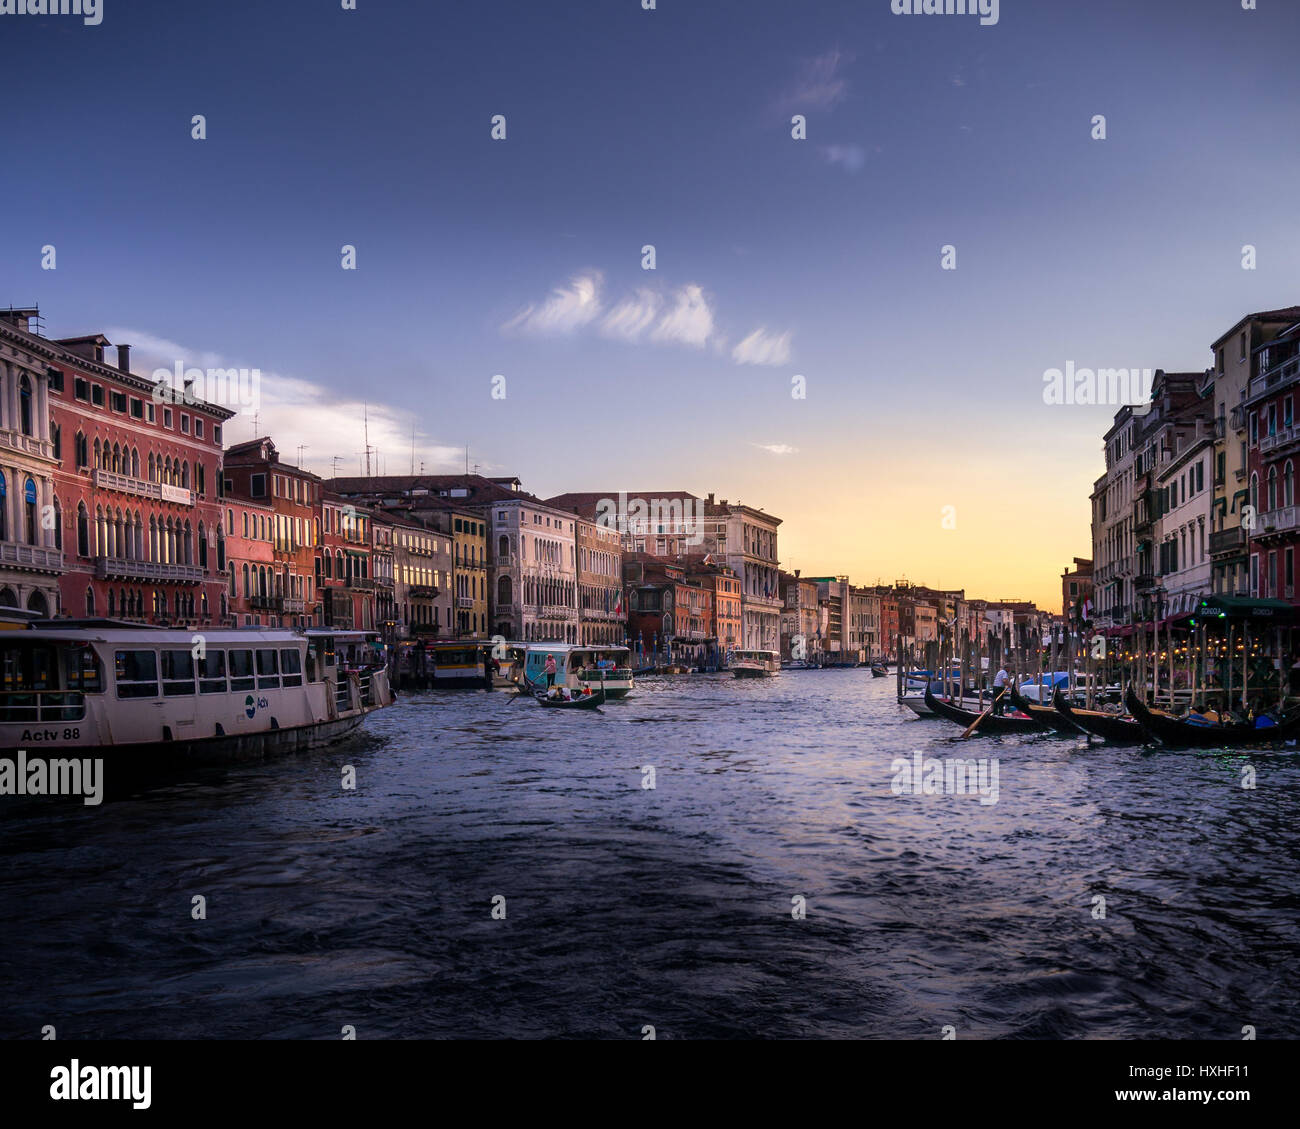 La luce e il colore sul Grand Canal, Venezia. Foto Stock